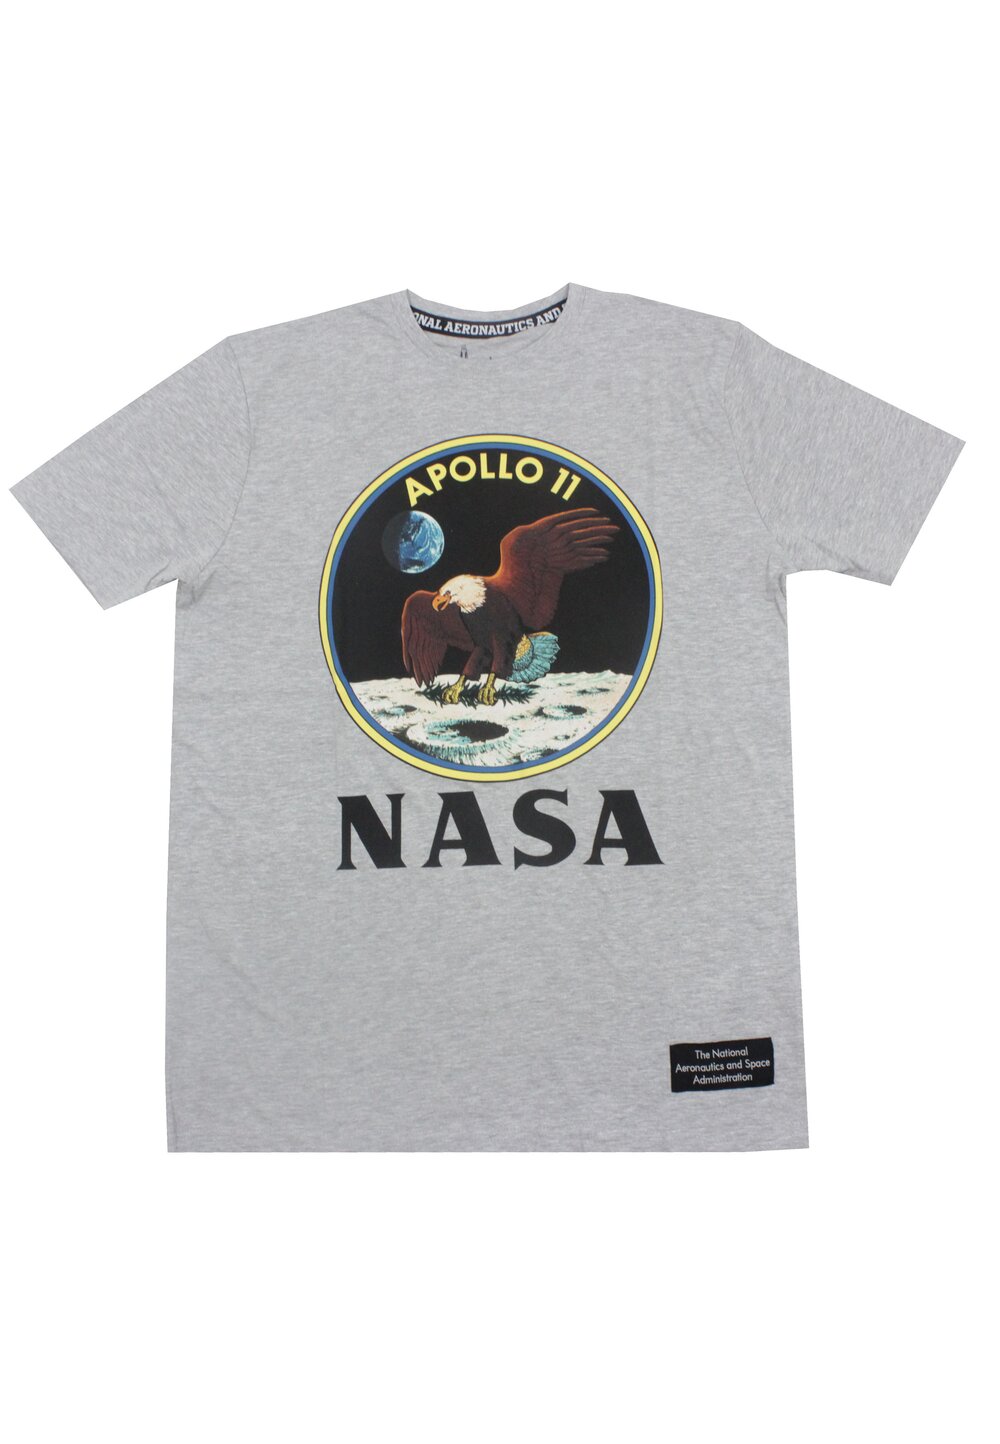 Tricou adulti, bumbac, Apollo 11, Nasa, gri